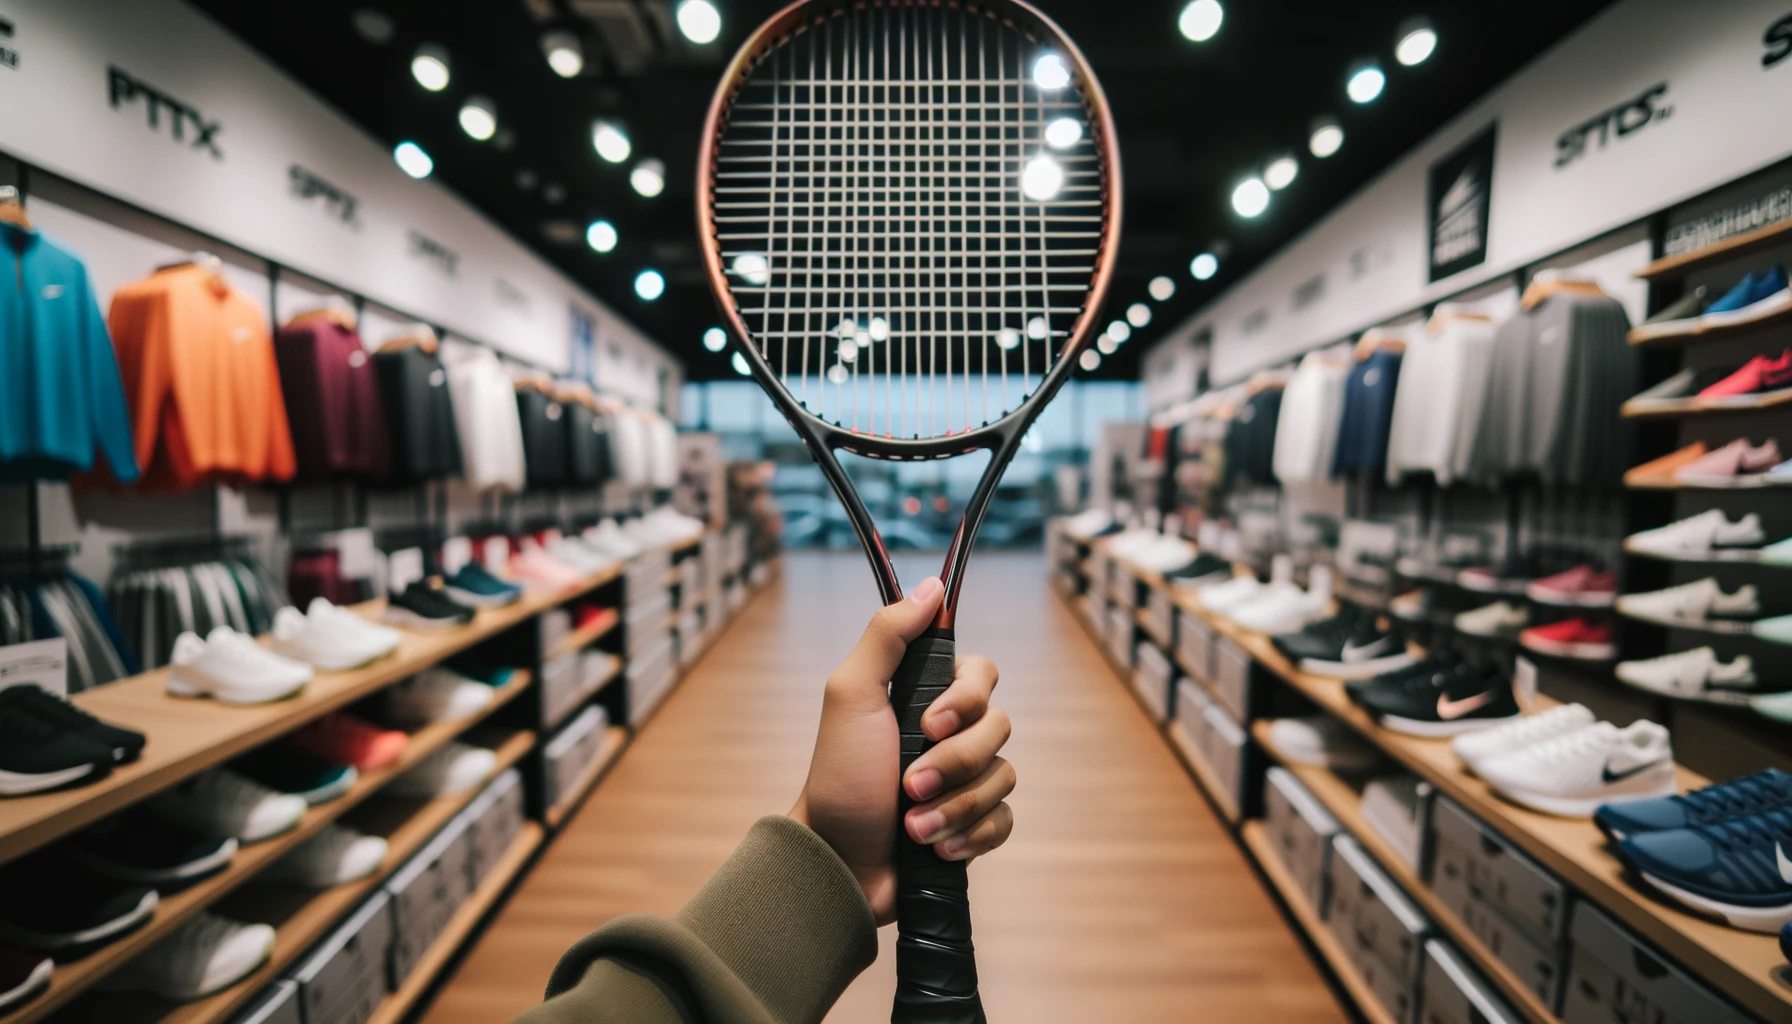 Foto einer Hand, die einen Tennisschläger hochhält und die Saiten und den Griff zeigt, mit einem unscharfen Hintergrund eines Sportgeschäfts.